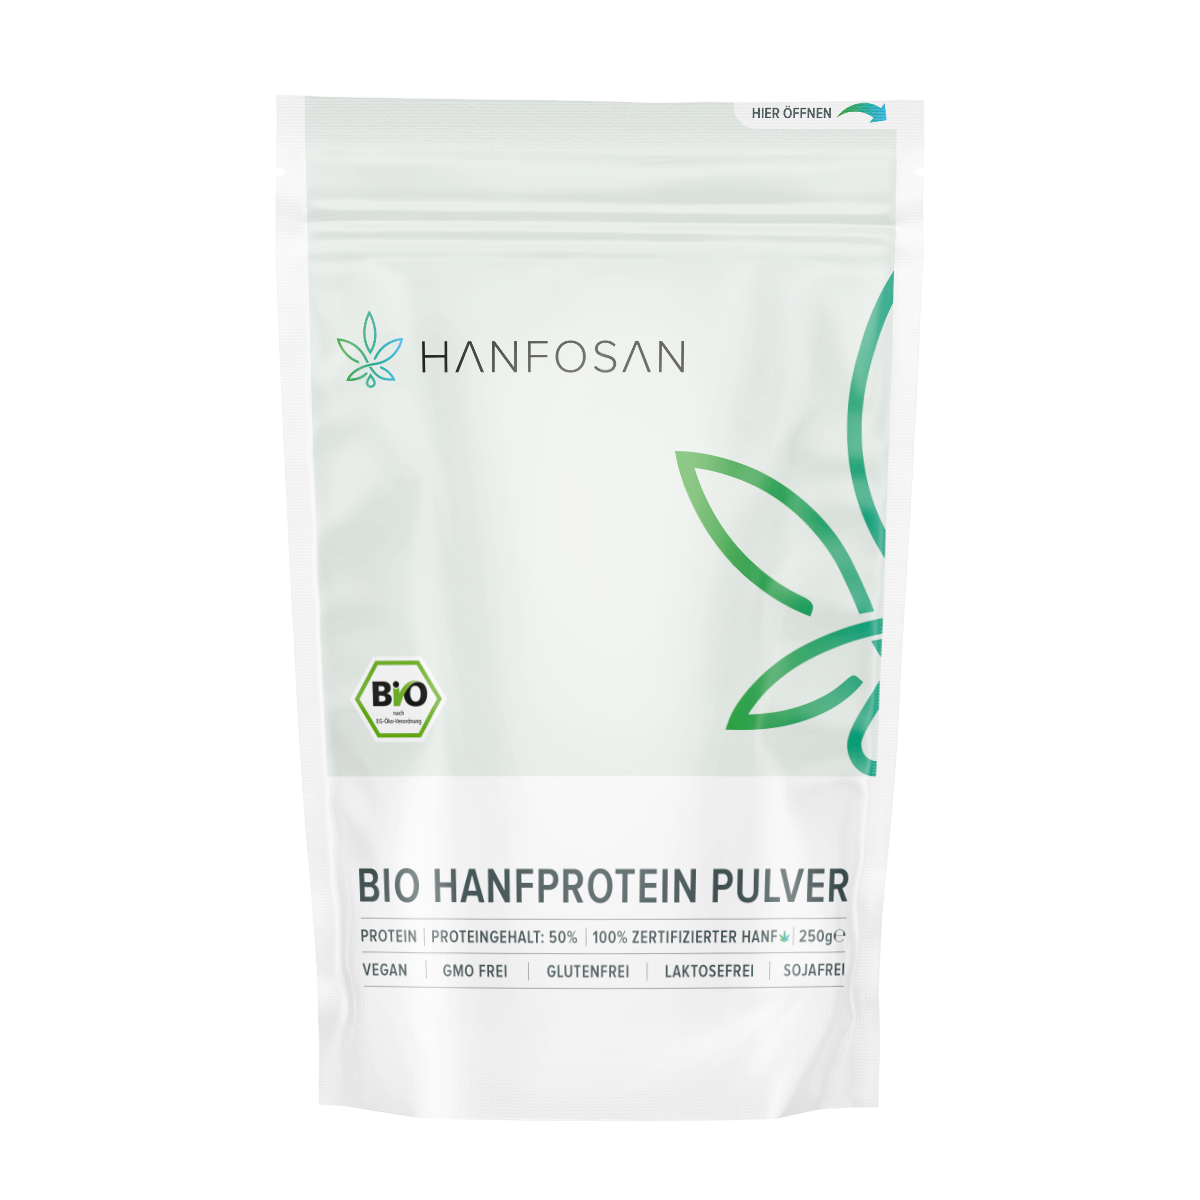 Bio Hanfprotein Pulver 500g · Hanfosan